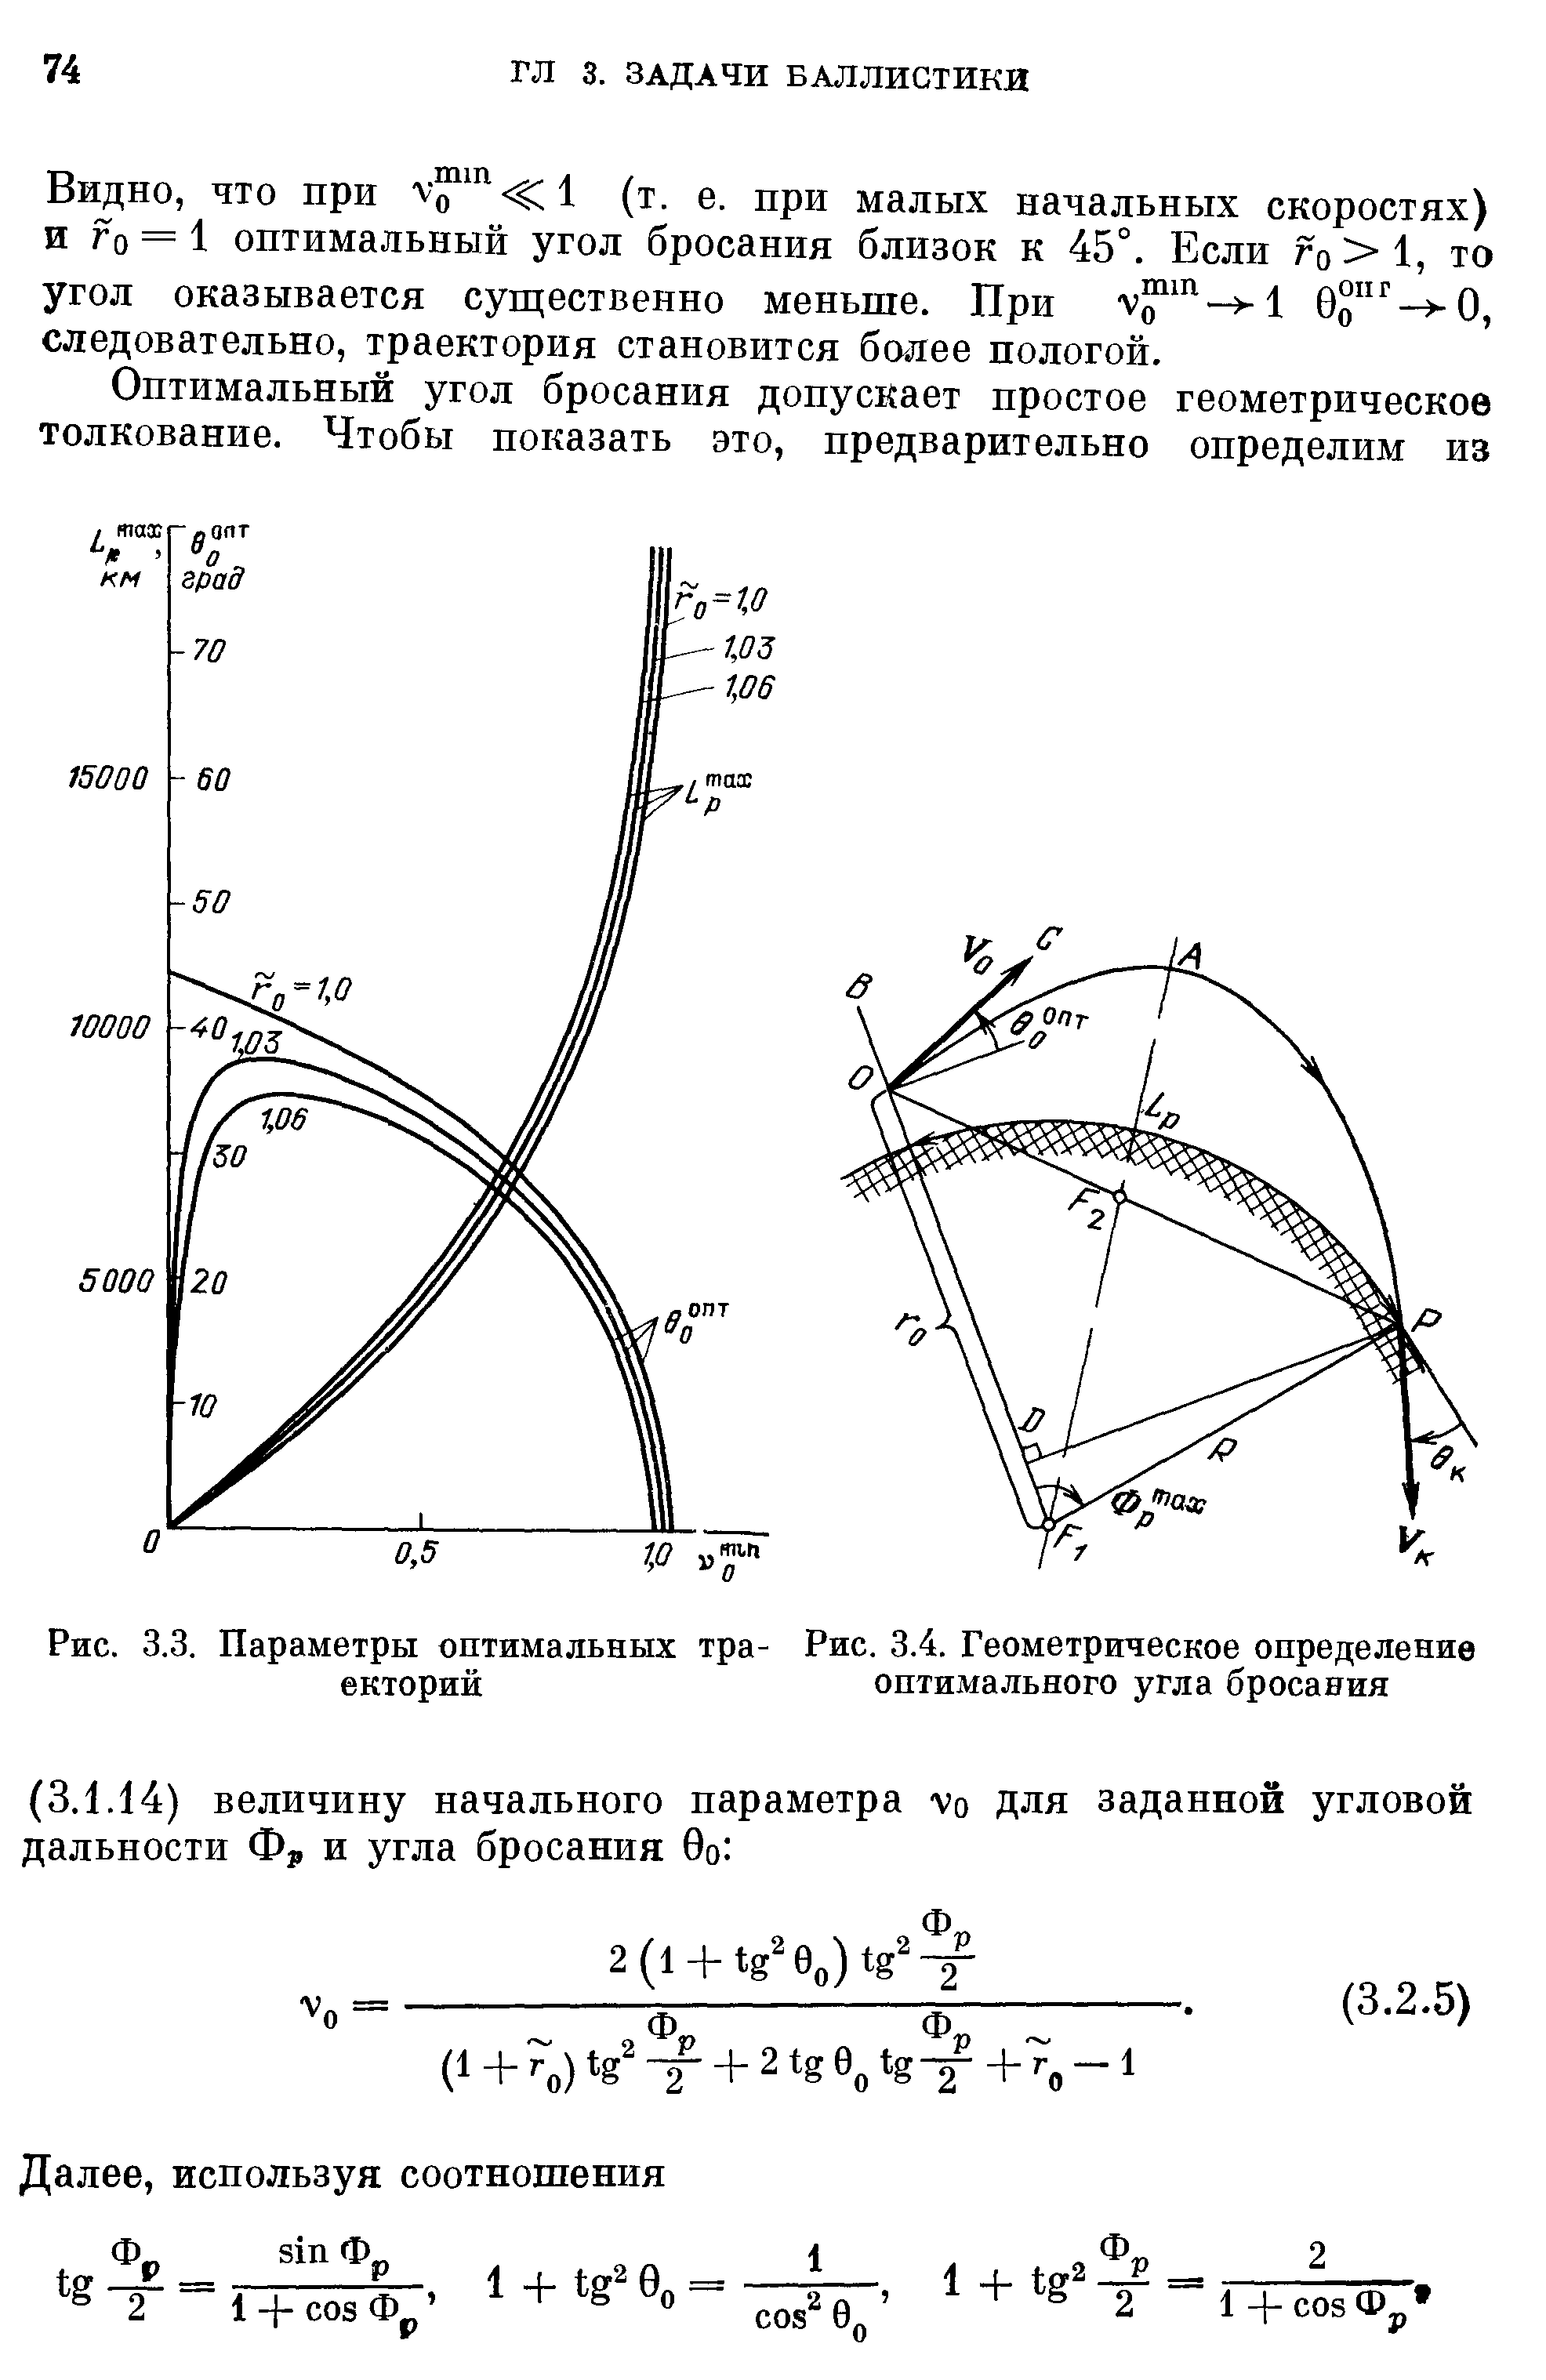 Рис. 3.3. Параметры оптимальных тра- Рис. 3.4. Геометрическое определение екторий оптимального угла бросания
